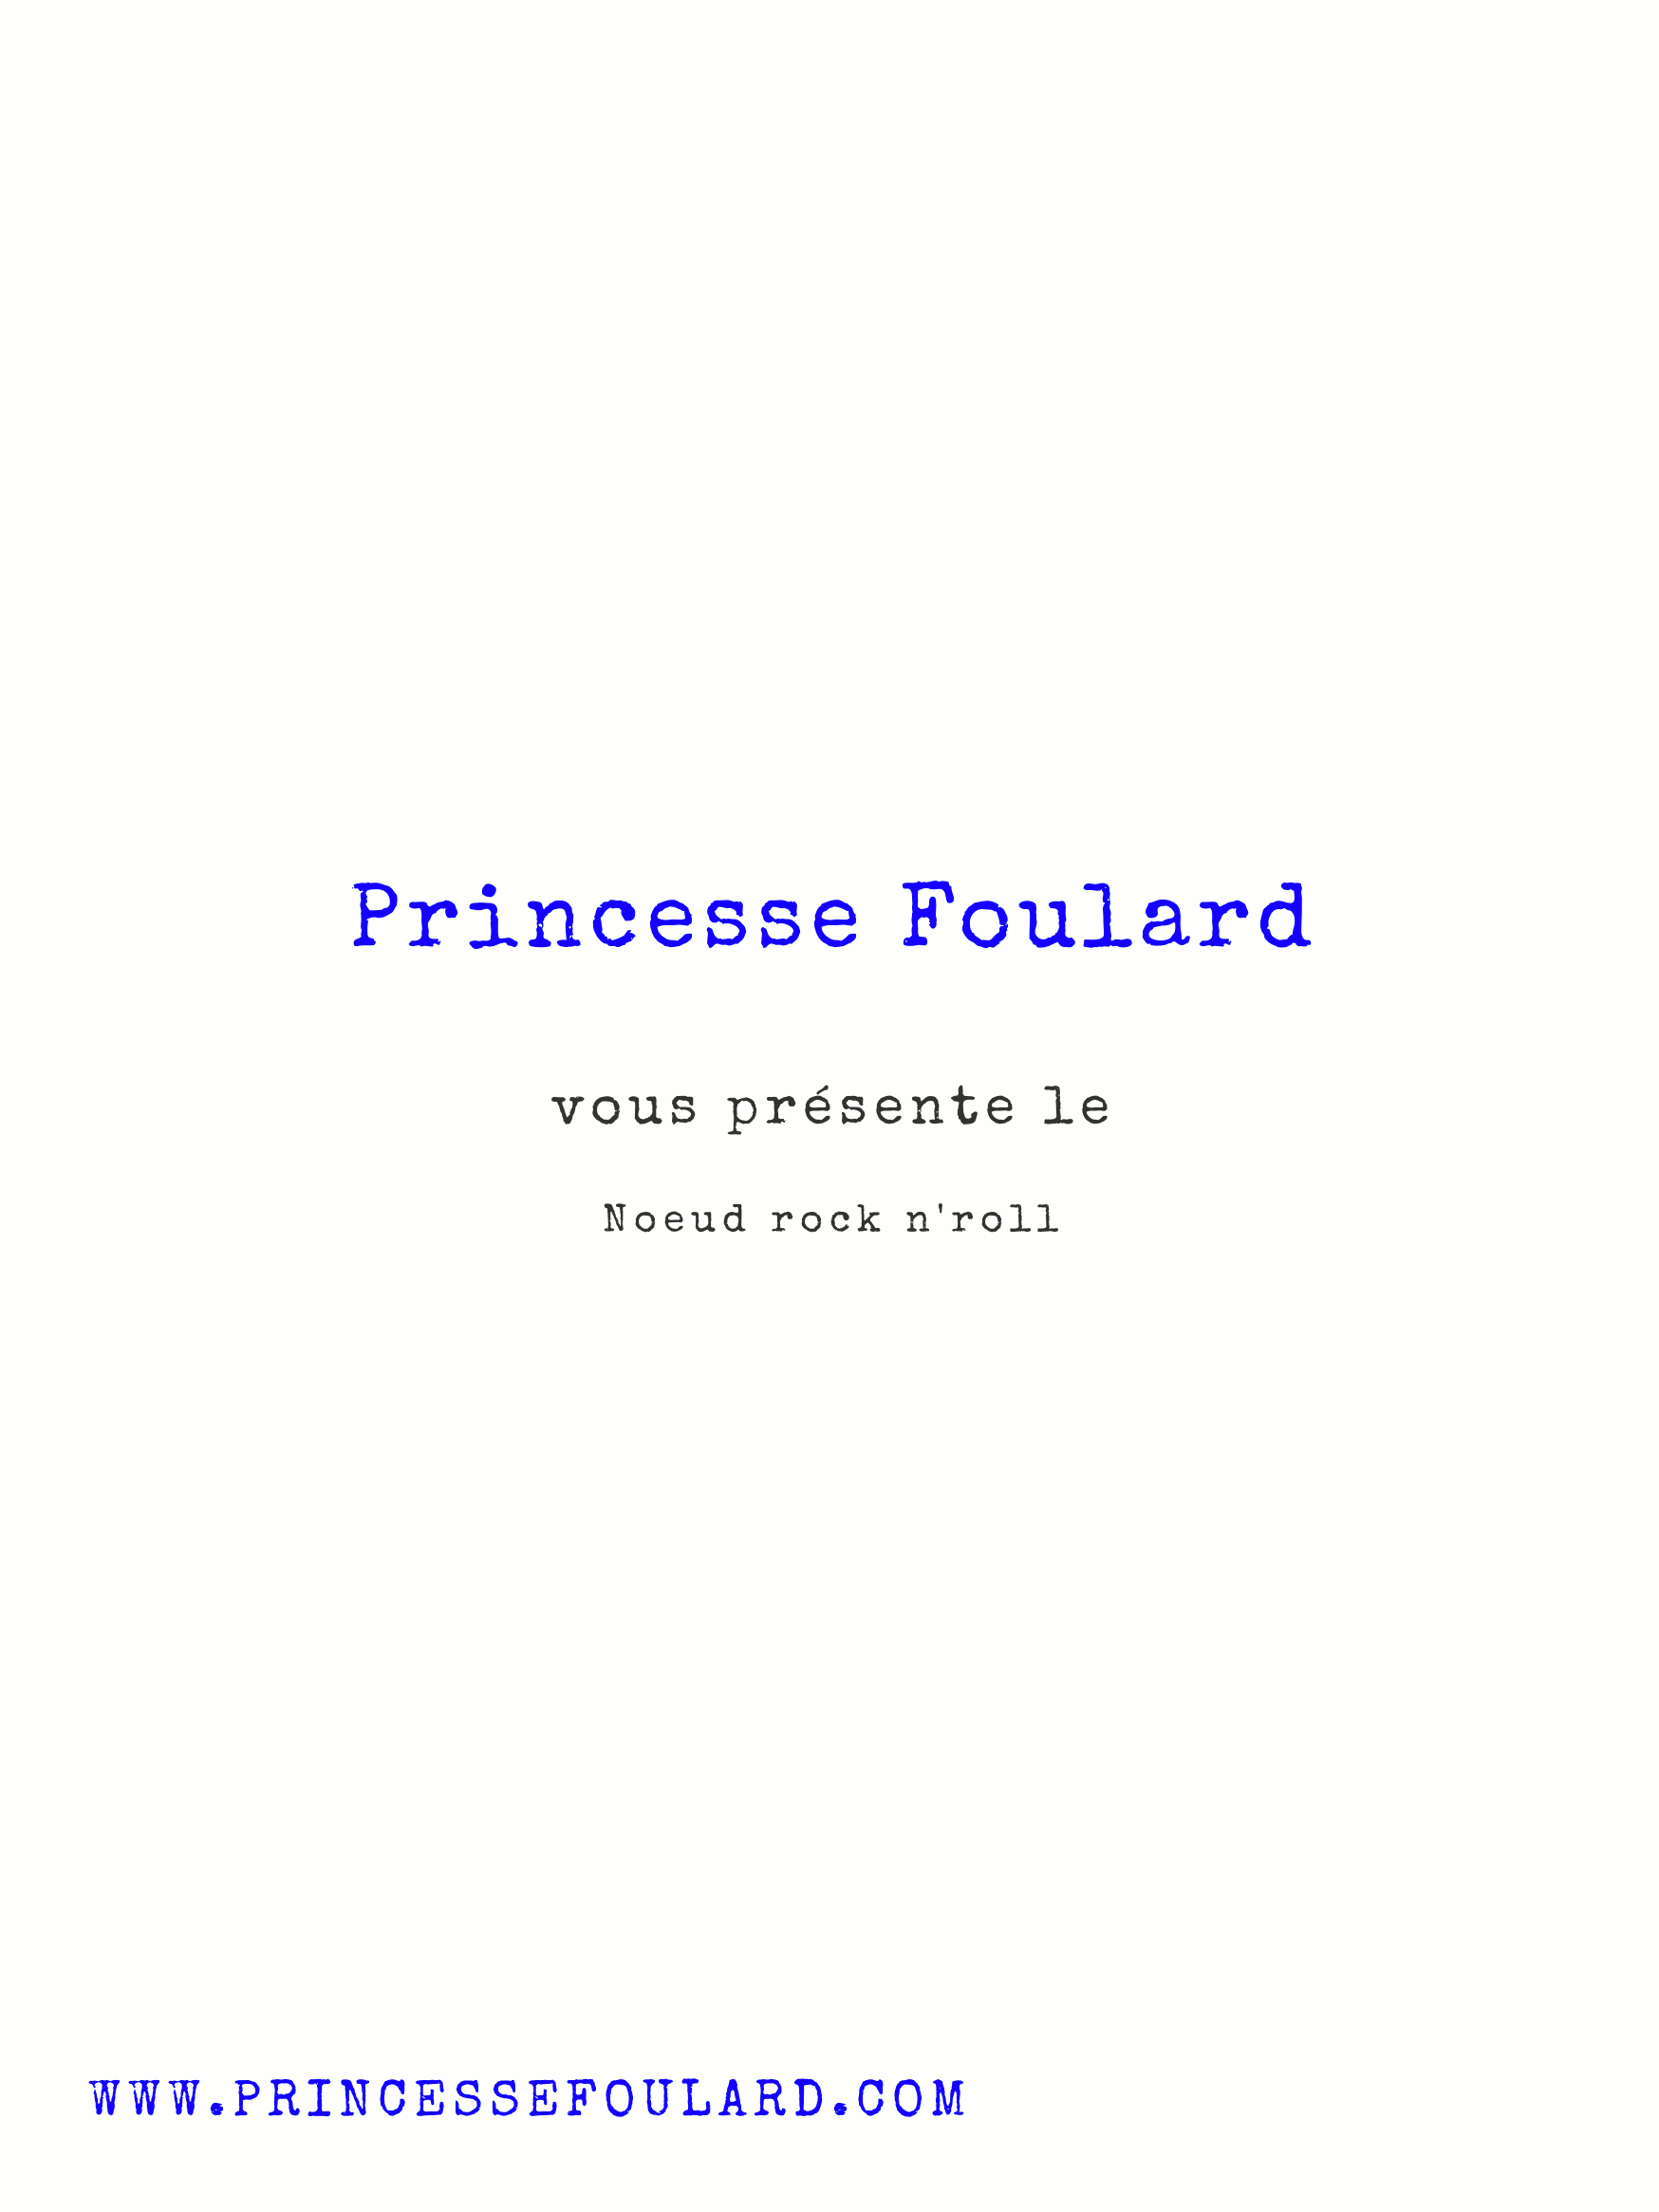 Tuto Noeud de Foulard rock n'roll par "Princesse Foulard"